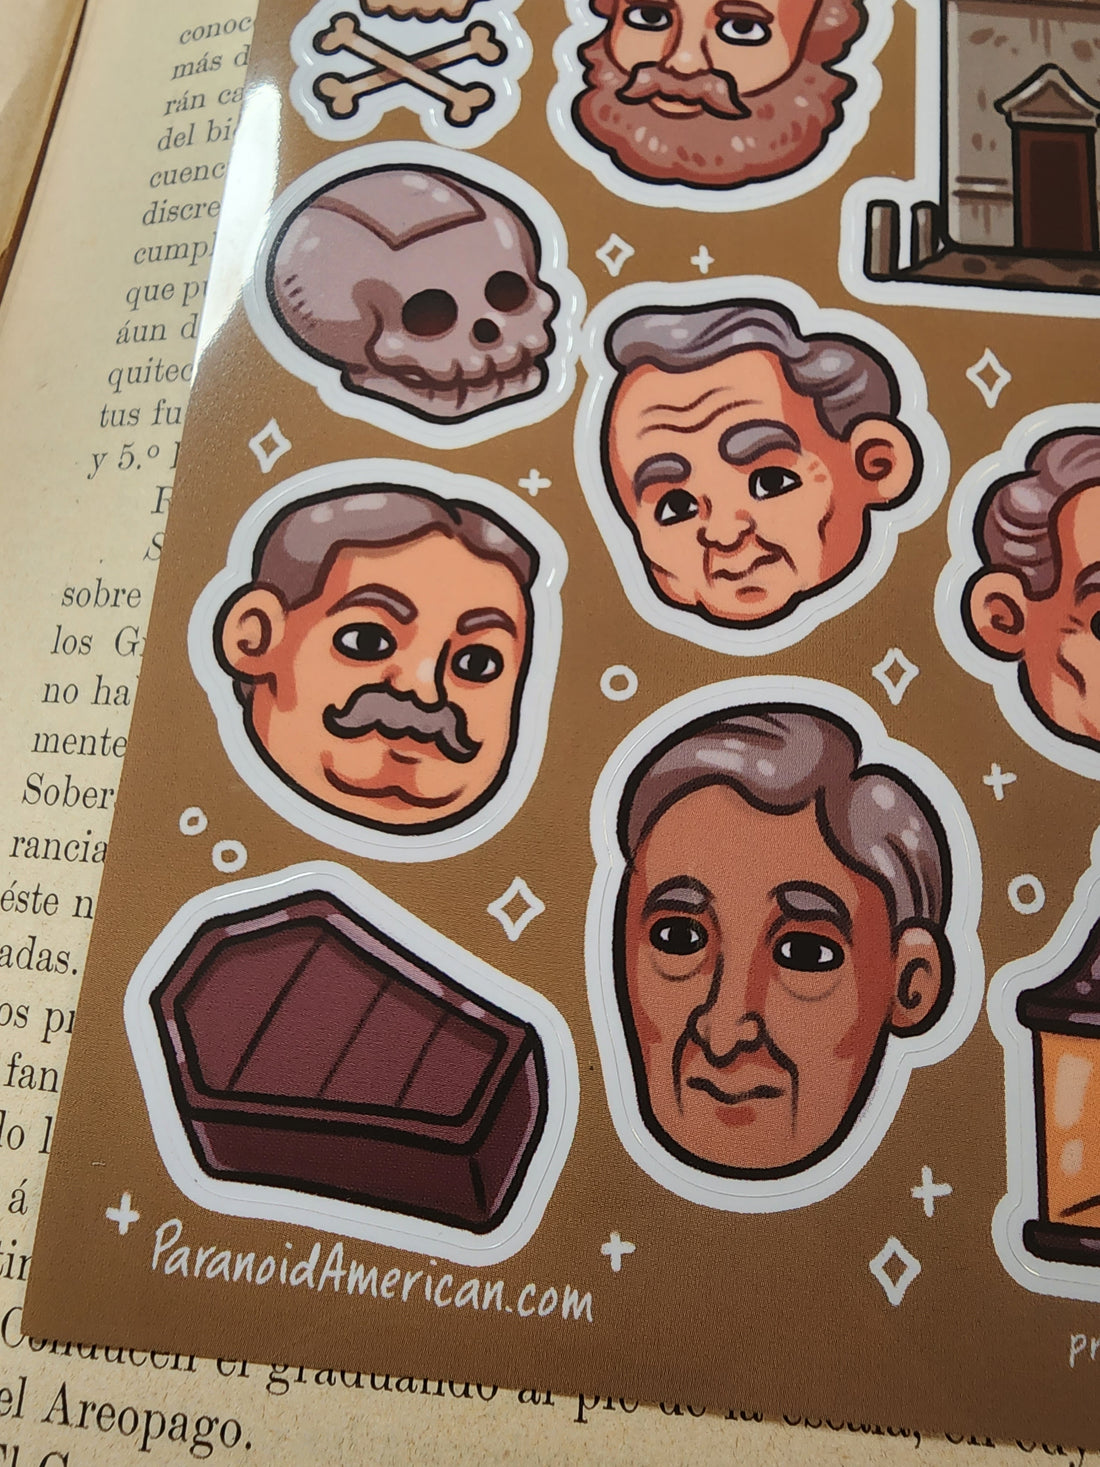 Skull & Bones (322) Sticker Sheet (by Mokopuni)